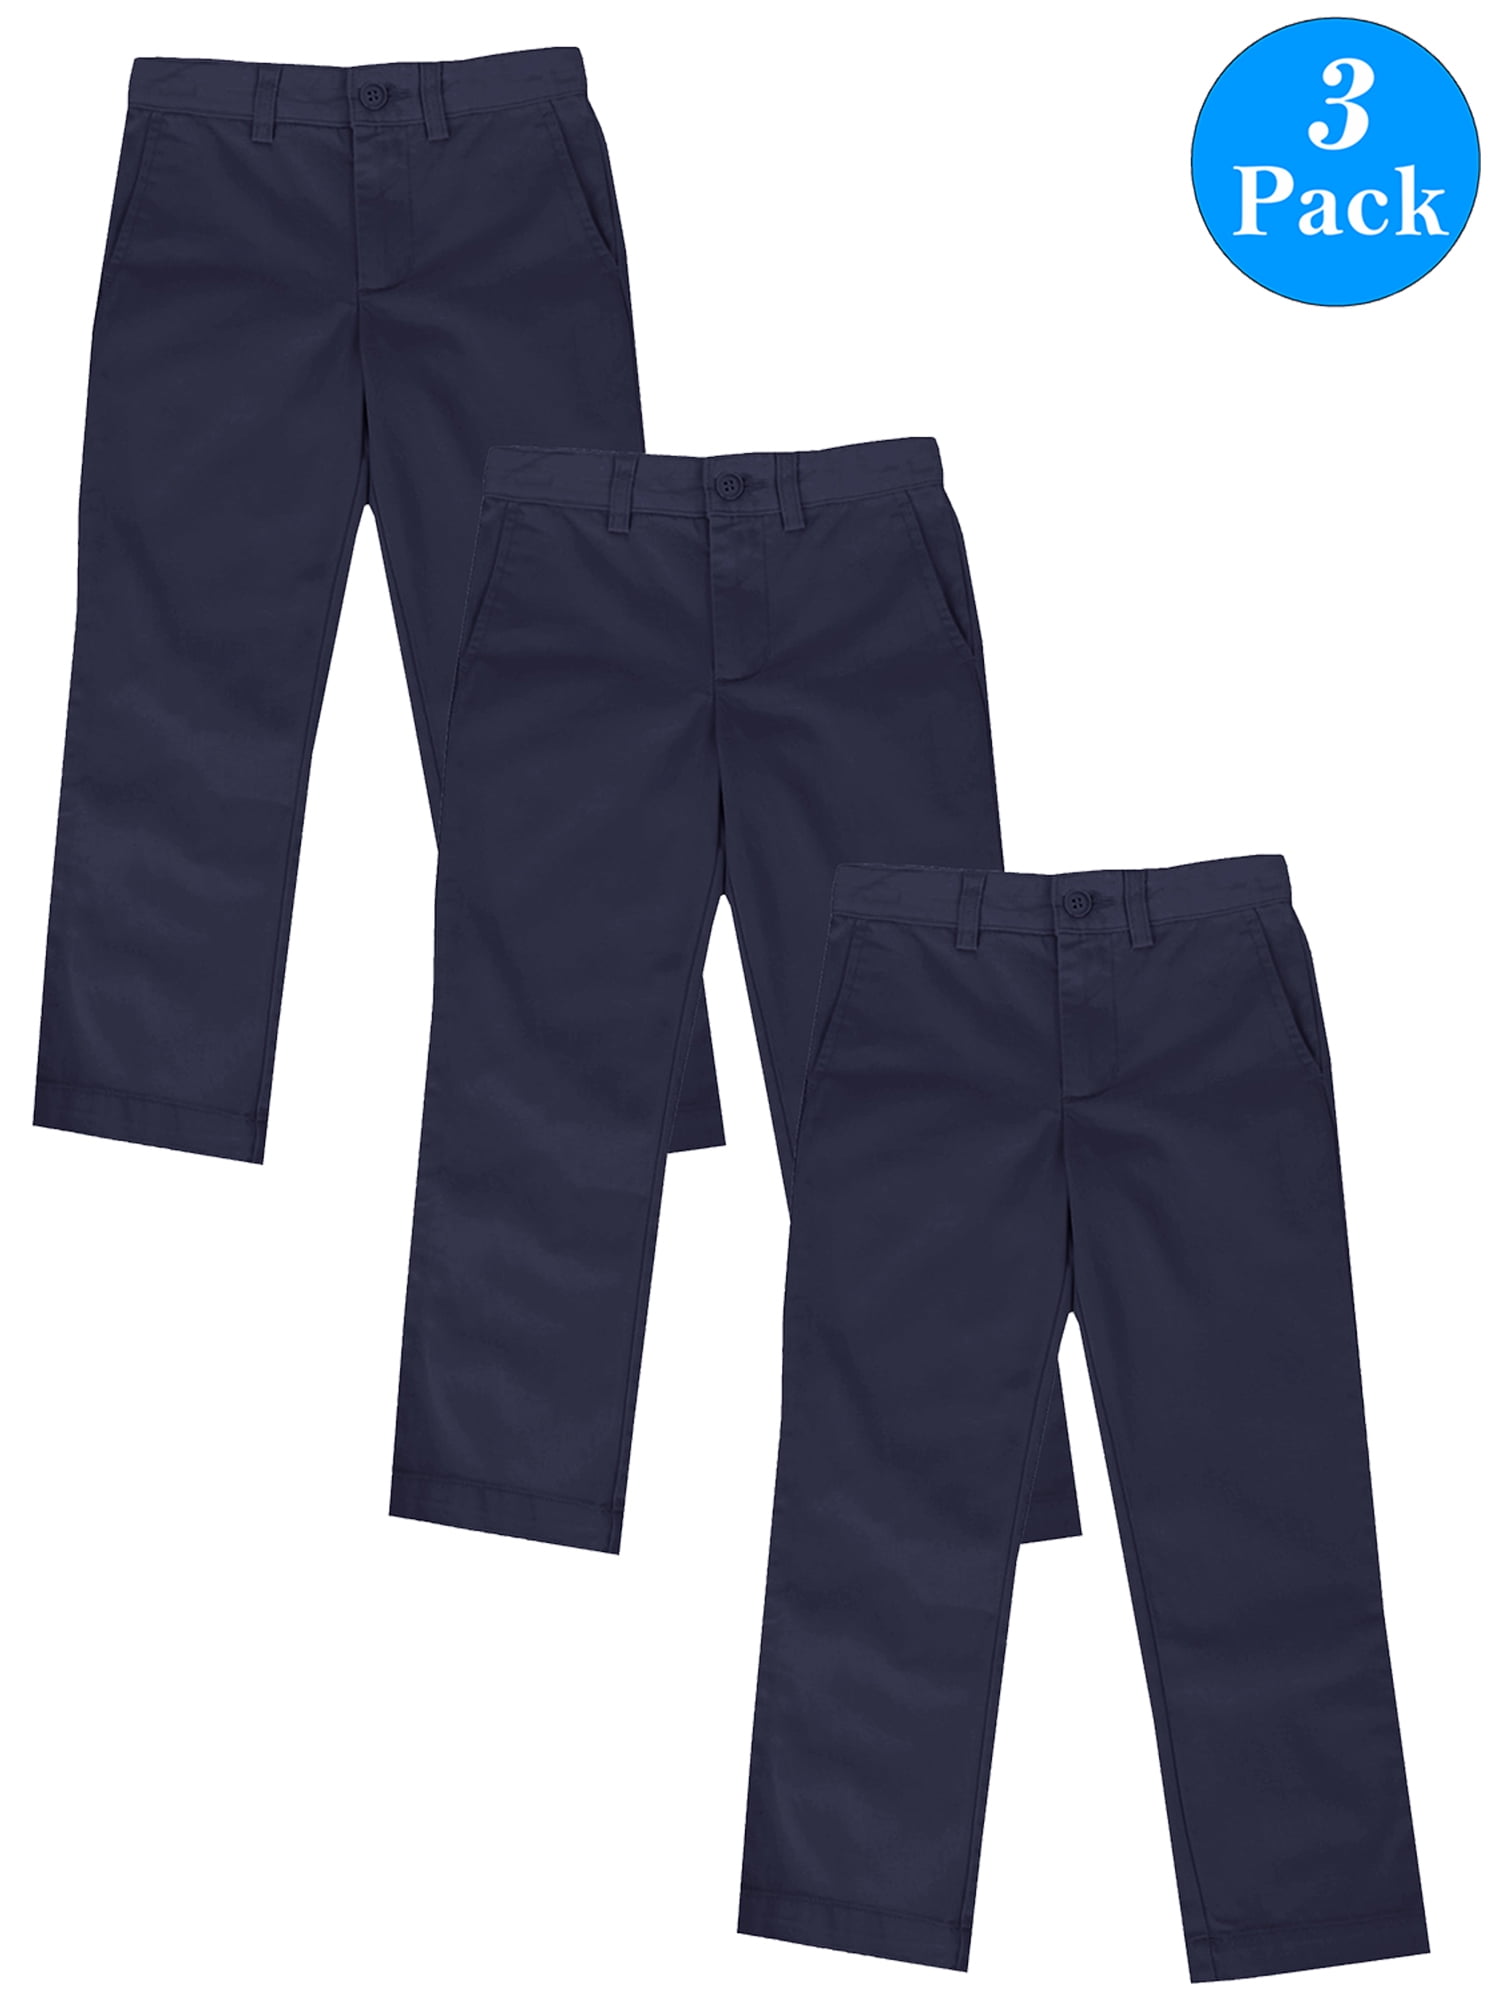 Boys School Uniform Pants at Rs 450/piece, Royapettah